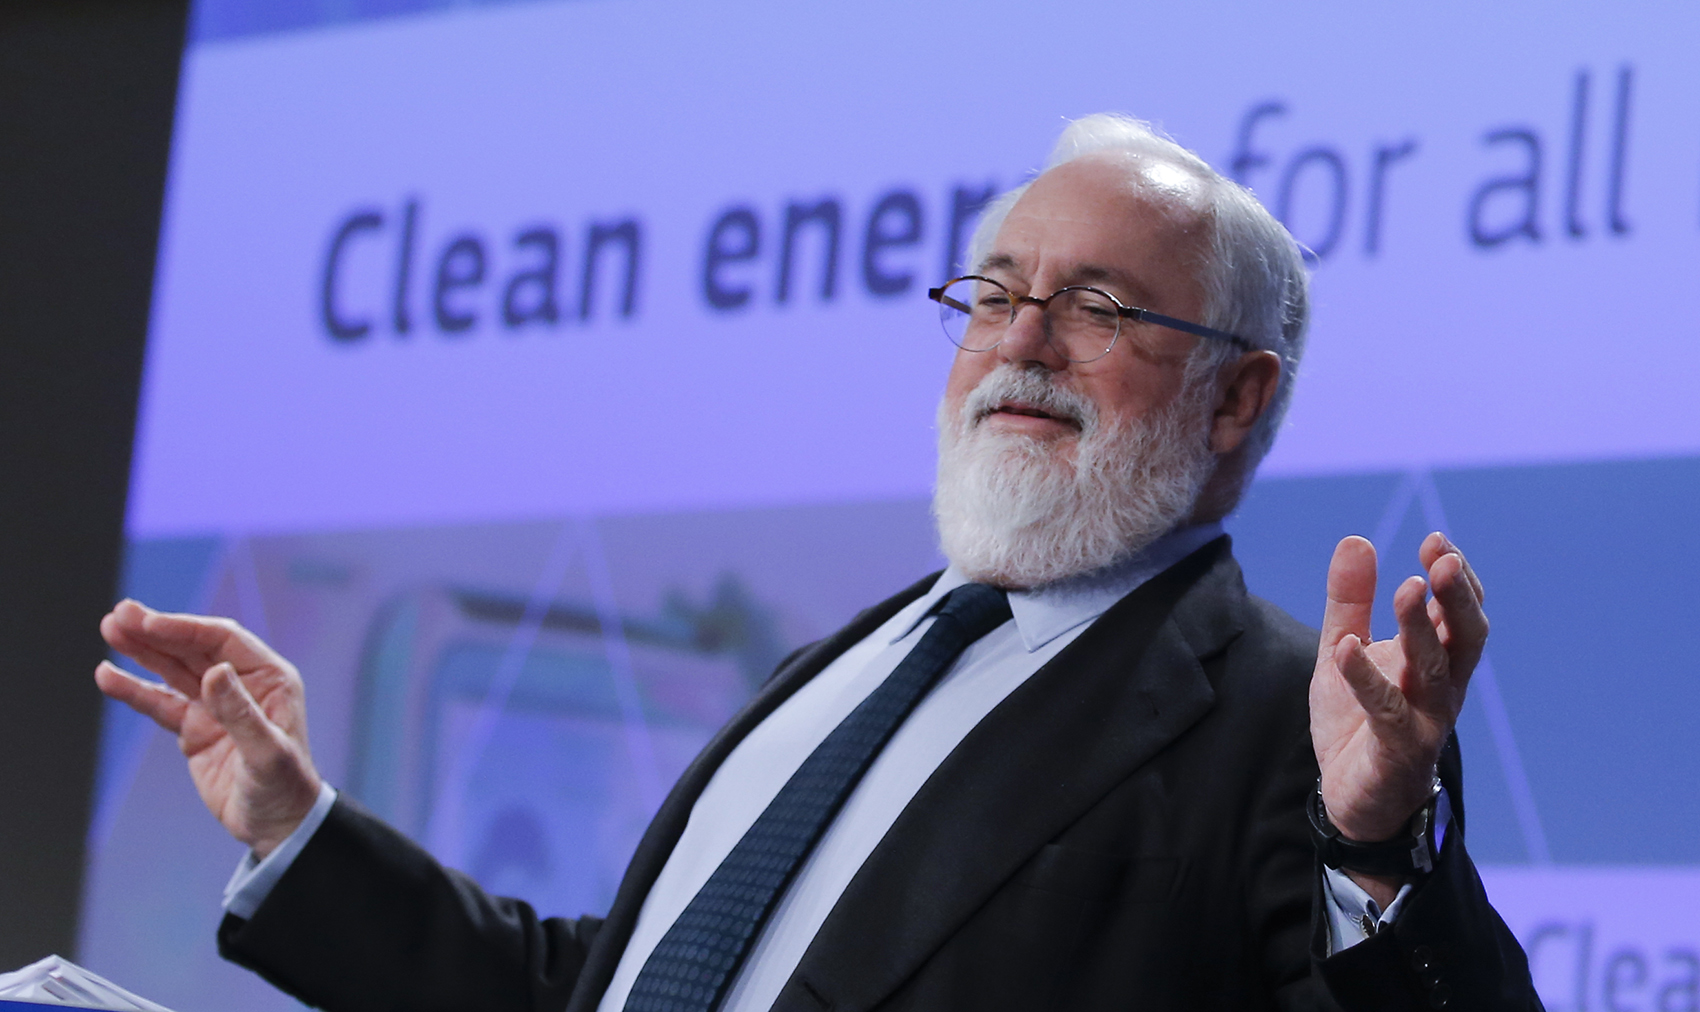 European Clean Energy package